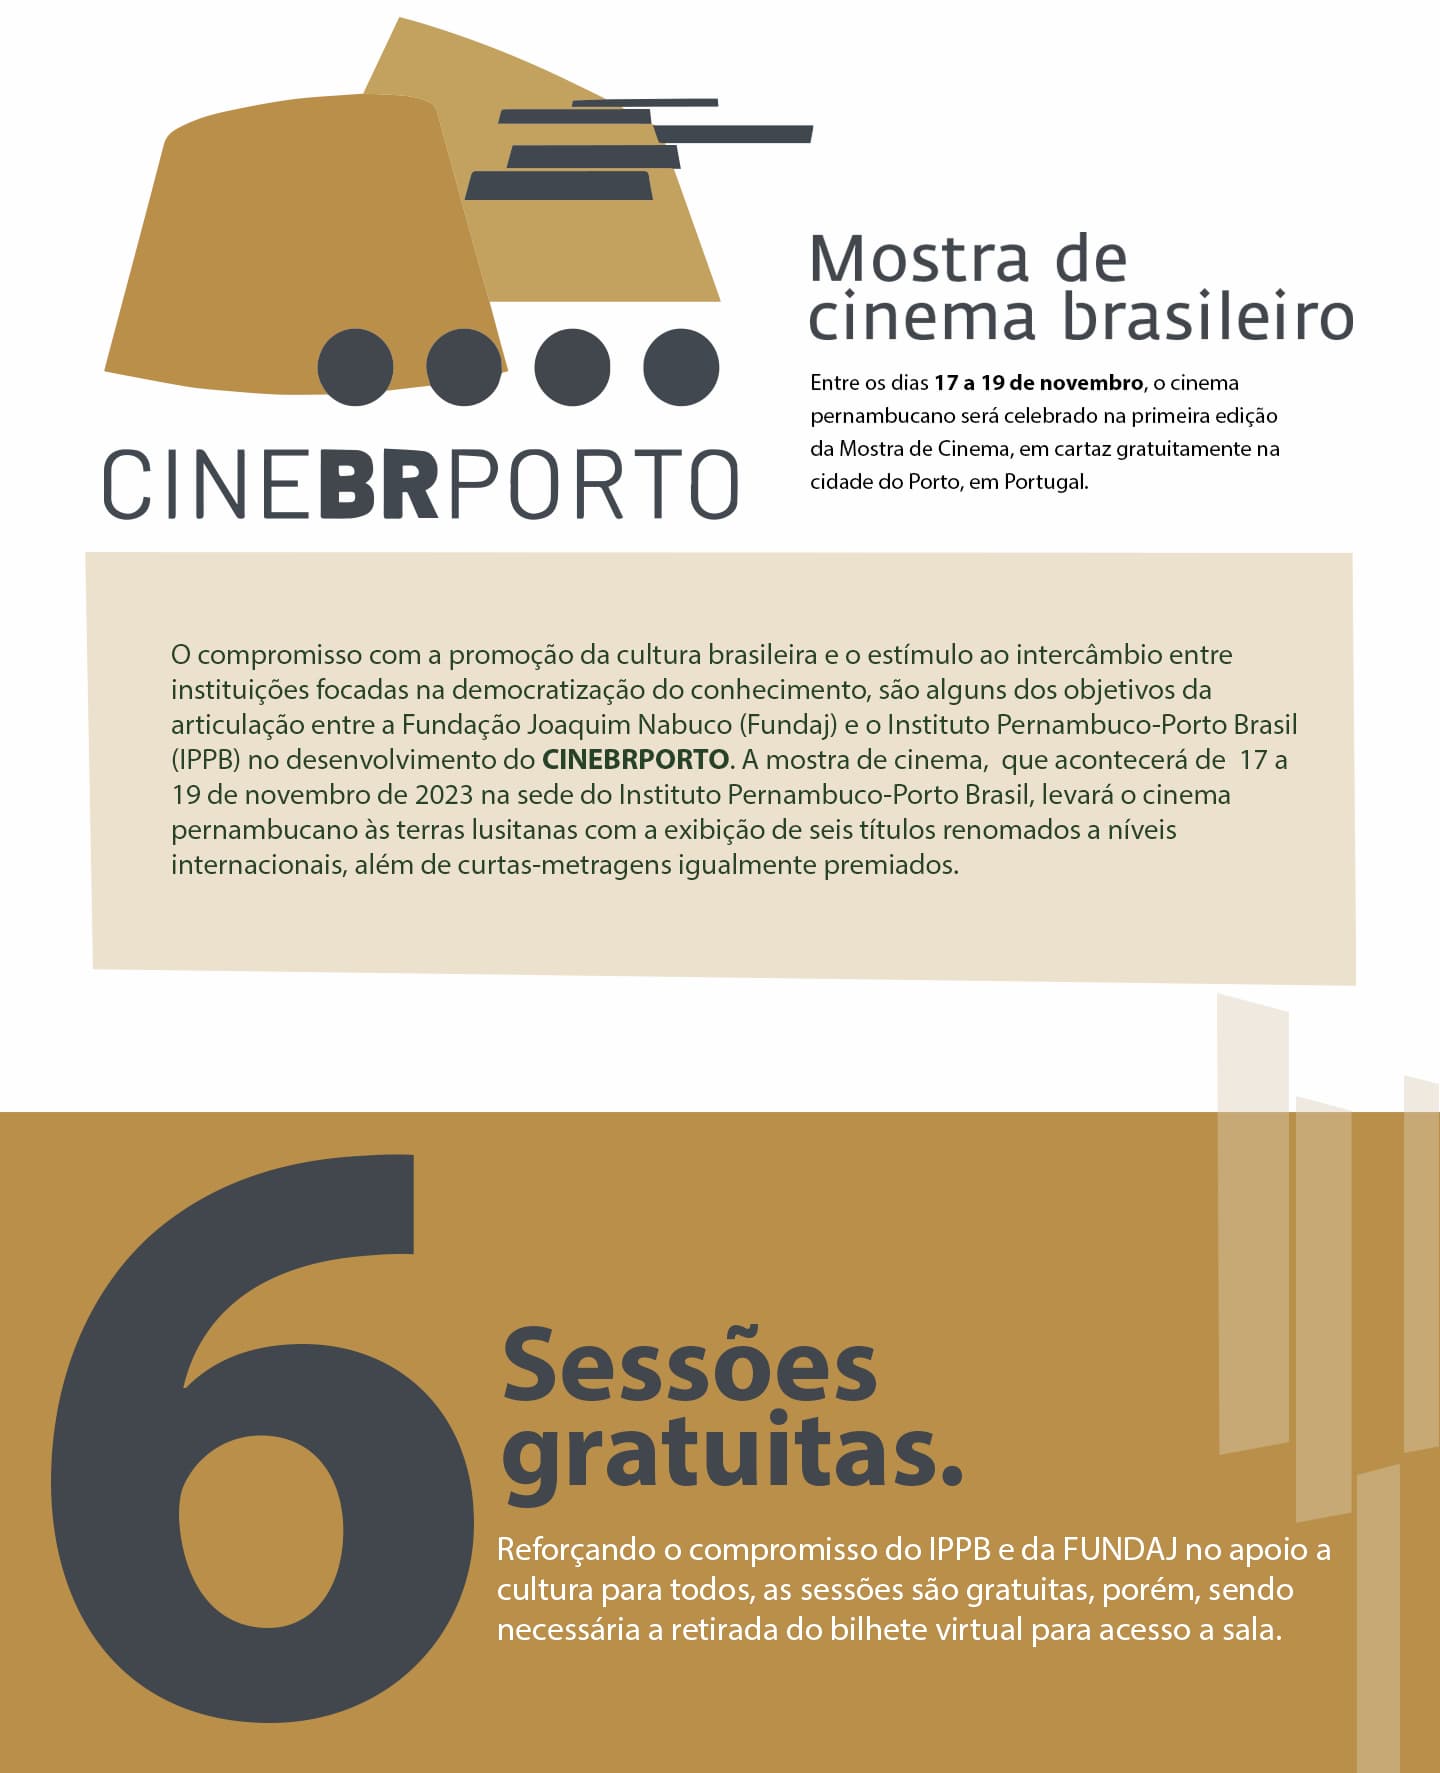 CINEBRPORTO - mostra de cinema brasileiro